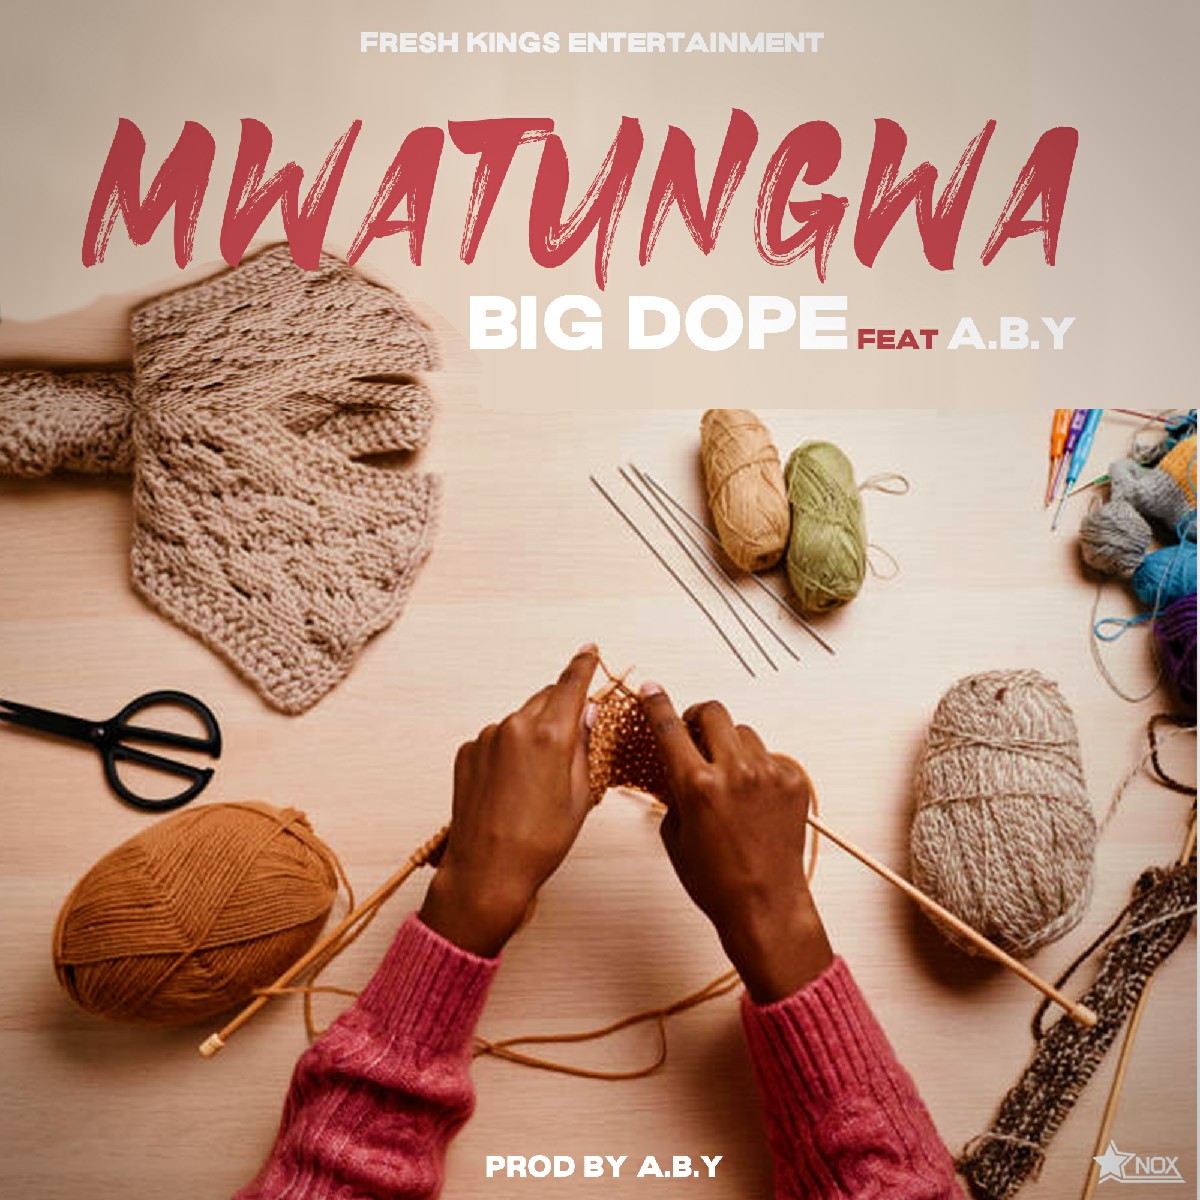 Big Dope ft. A.B.Y - Mwatungwa